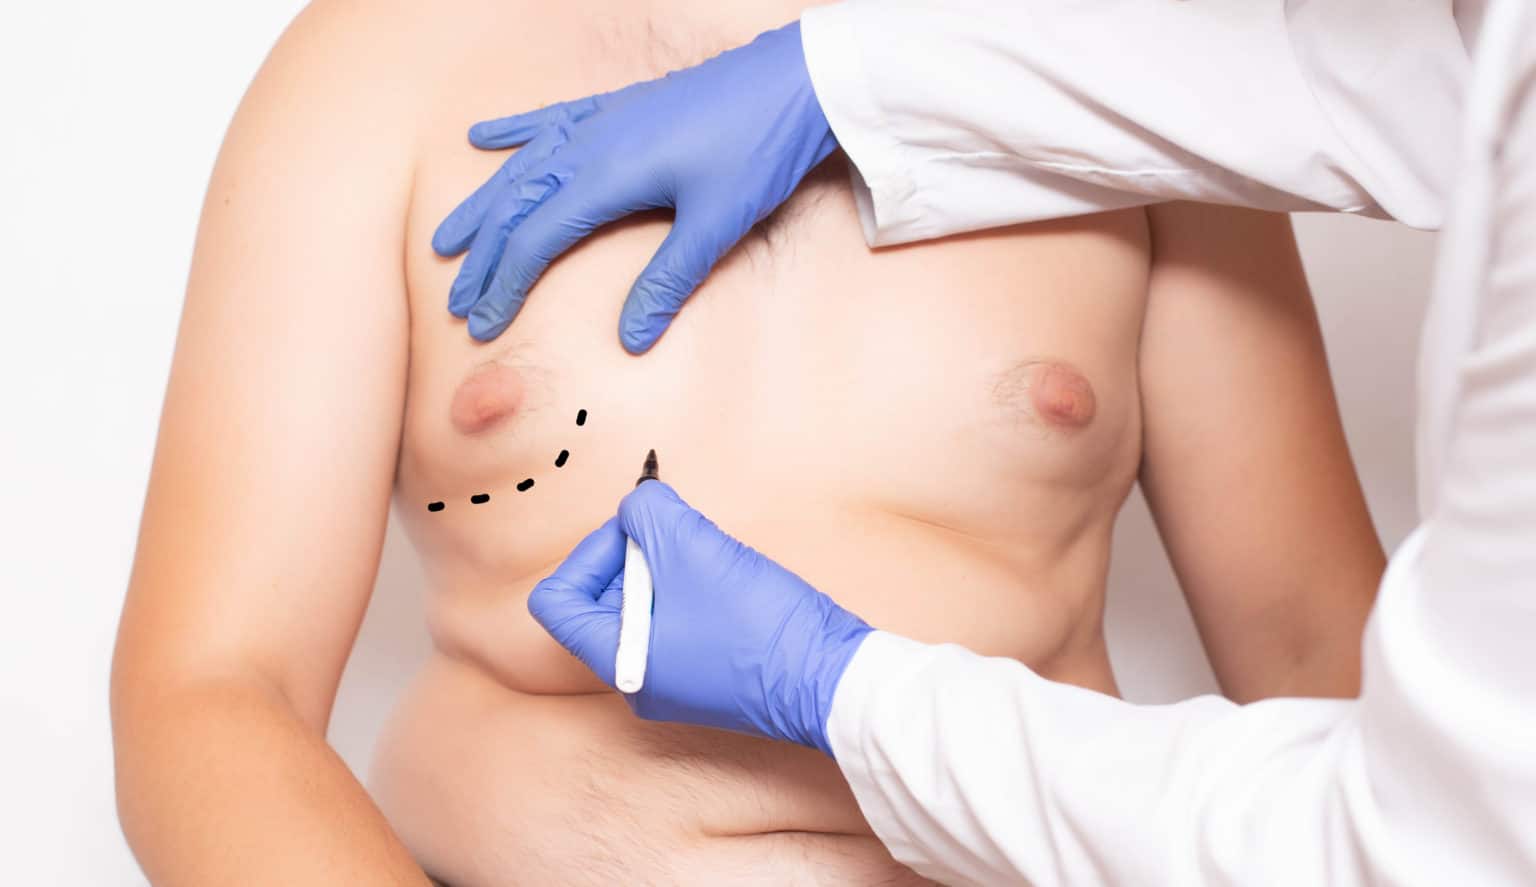 gynekomasti bröstreduktion för män